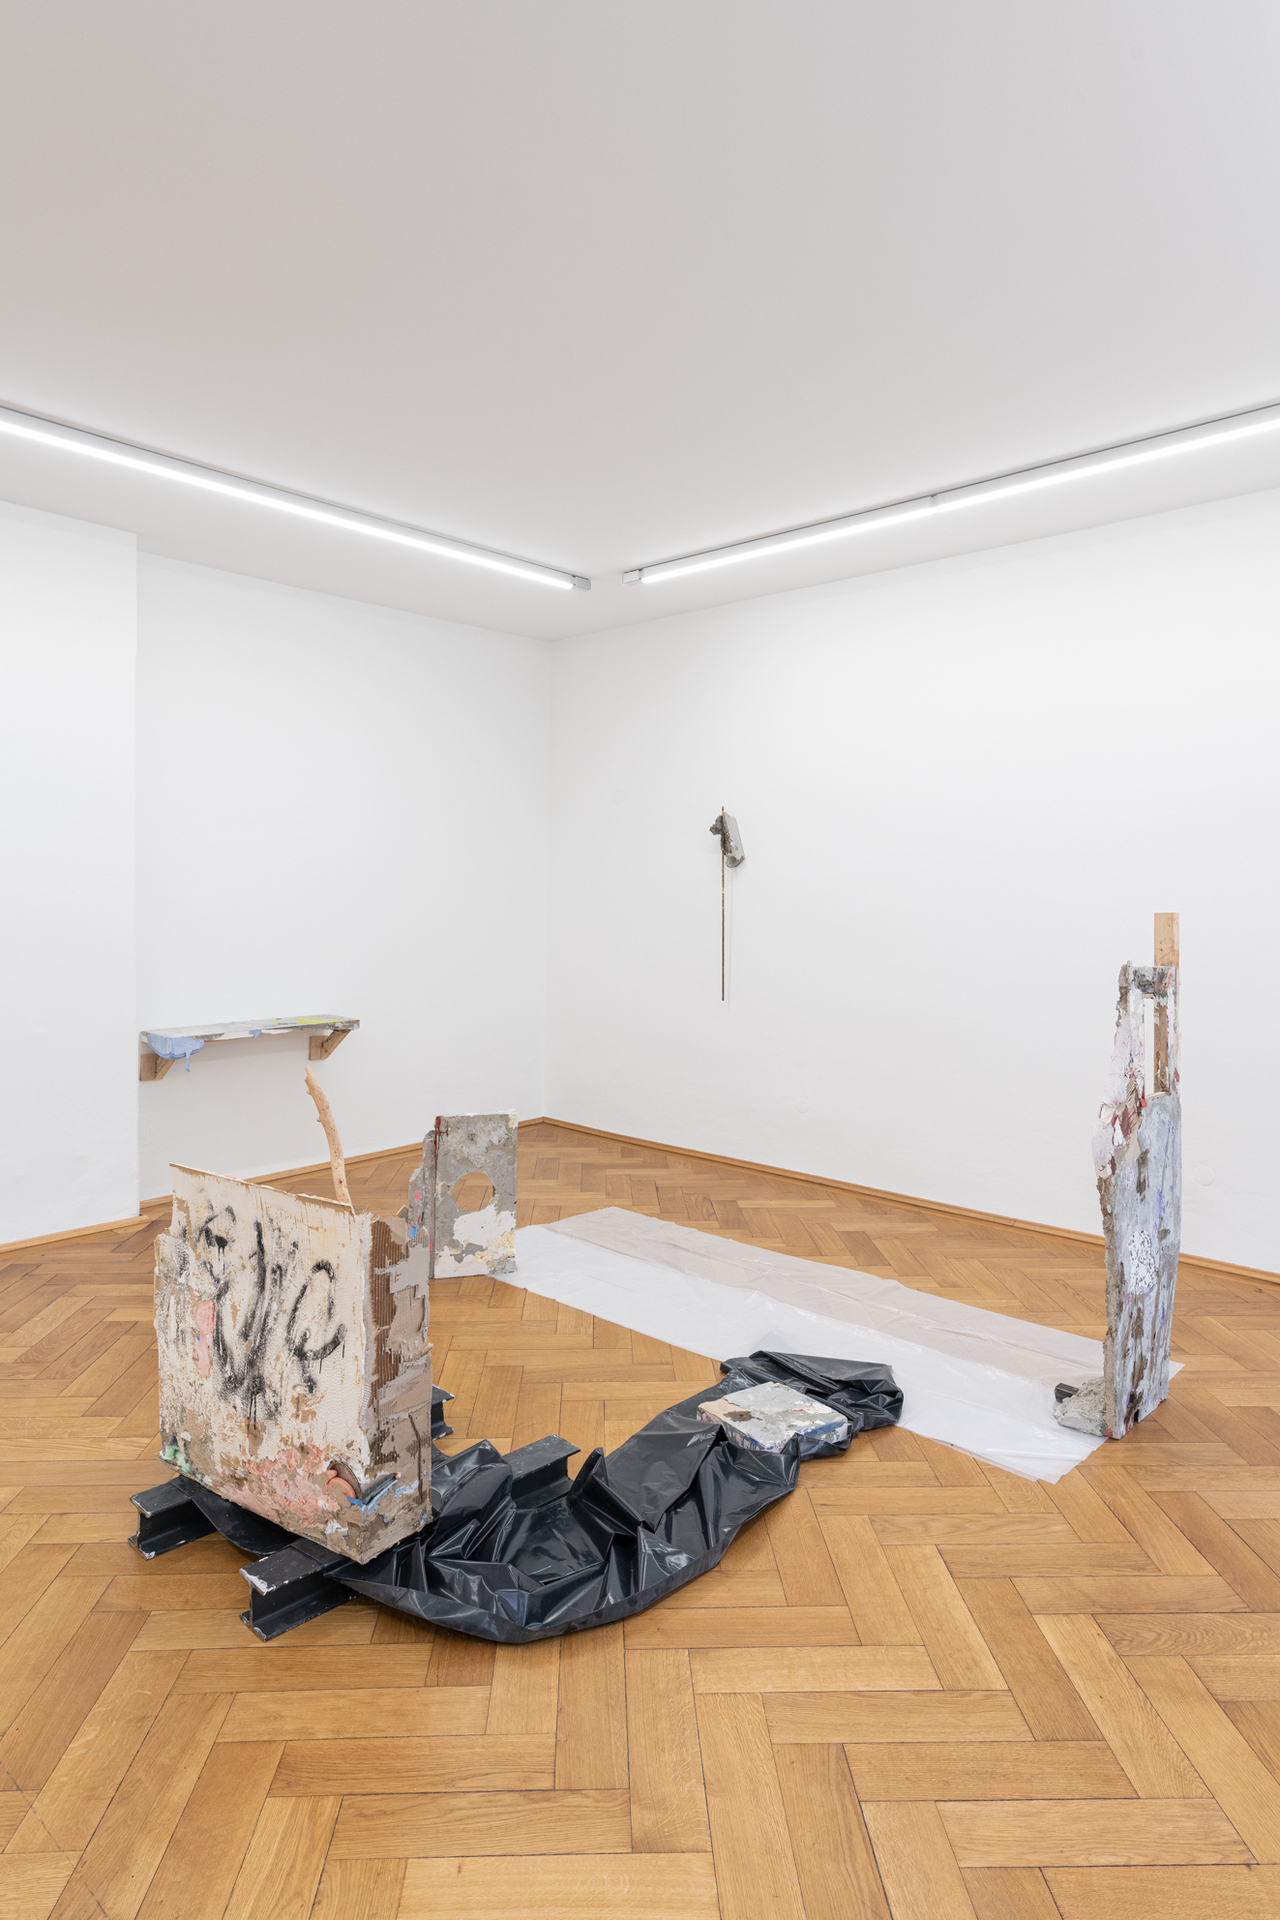 Installation view "unkultiviert" by Patrick Ostrowsky at Britta Rettberg Munich